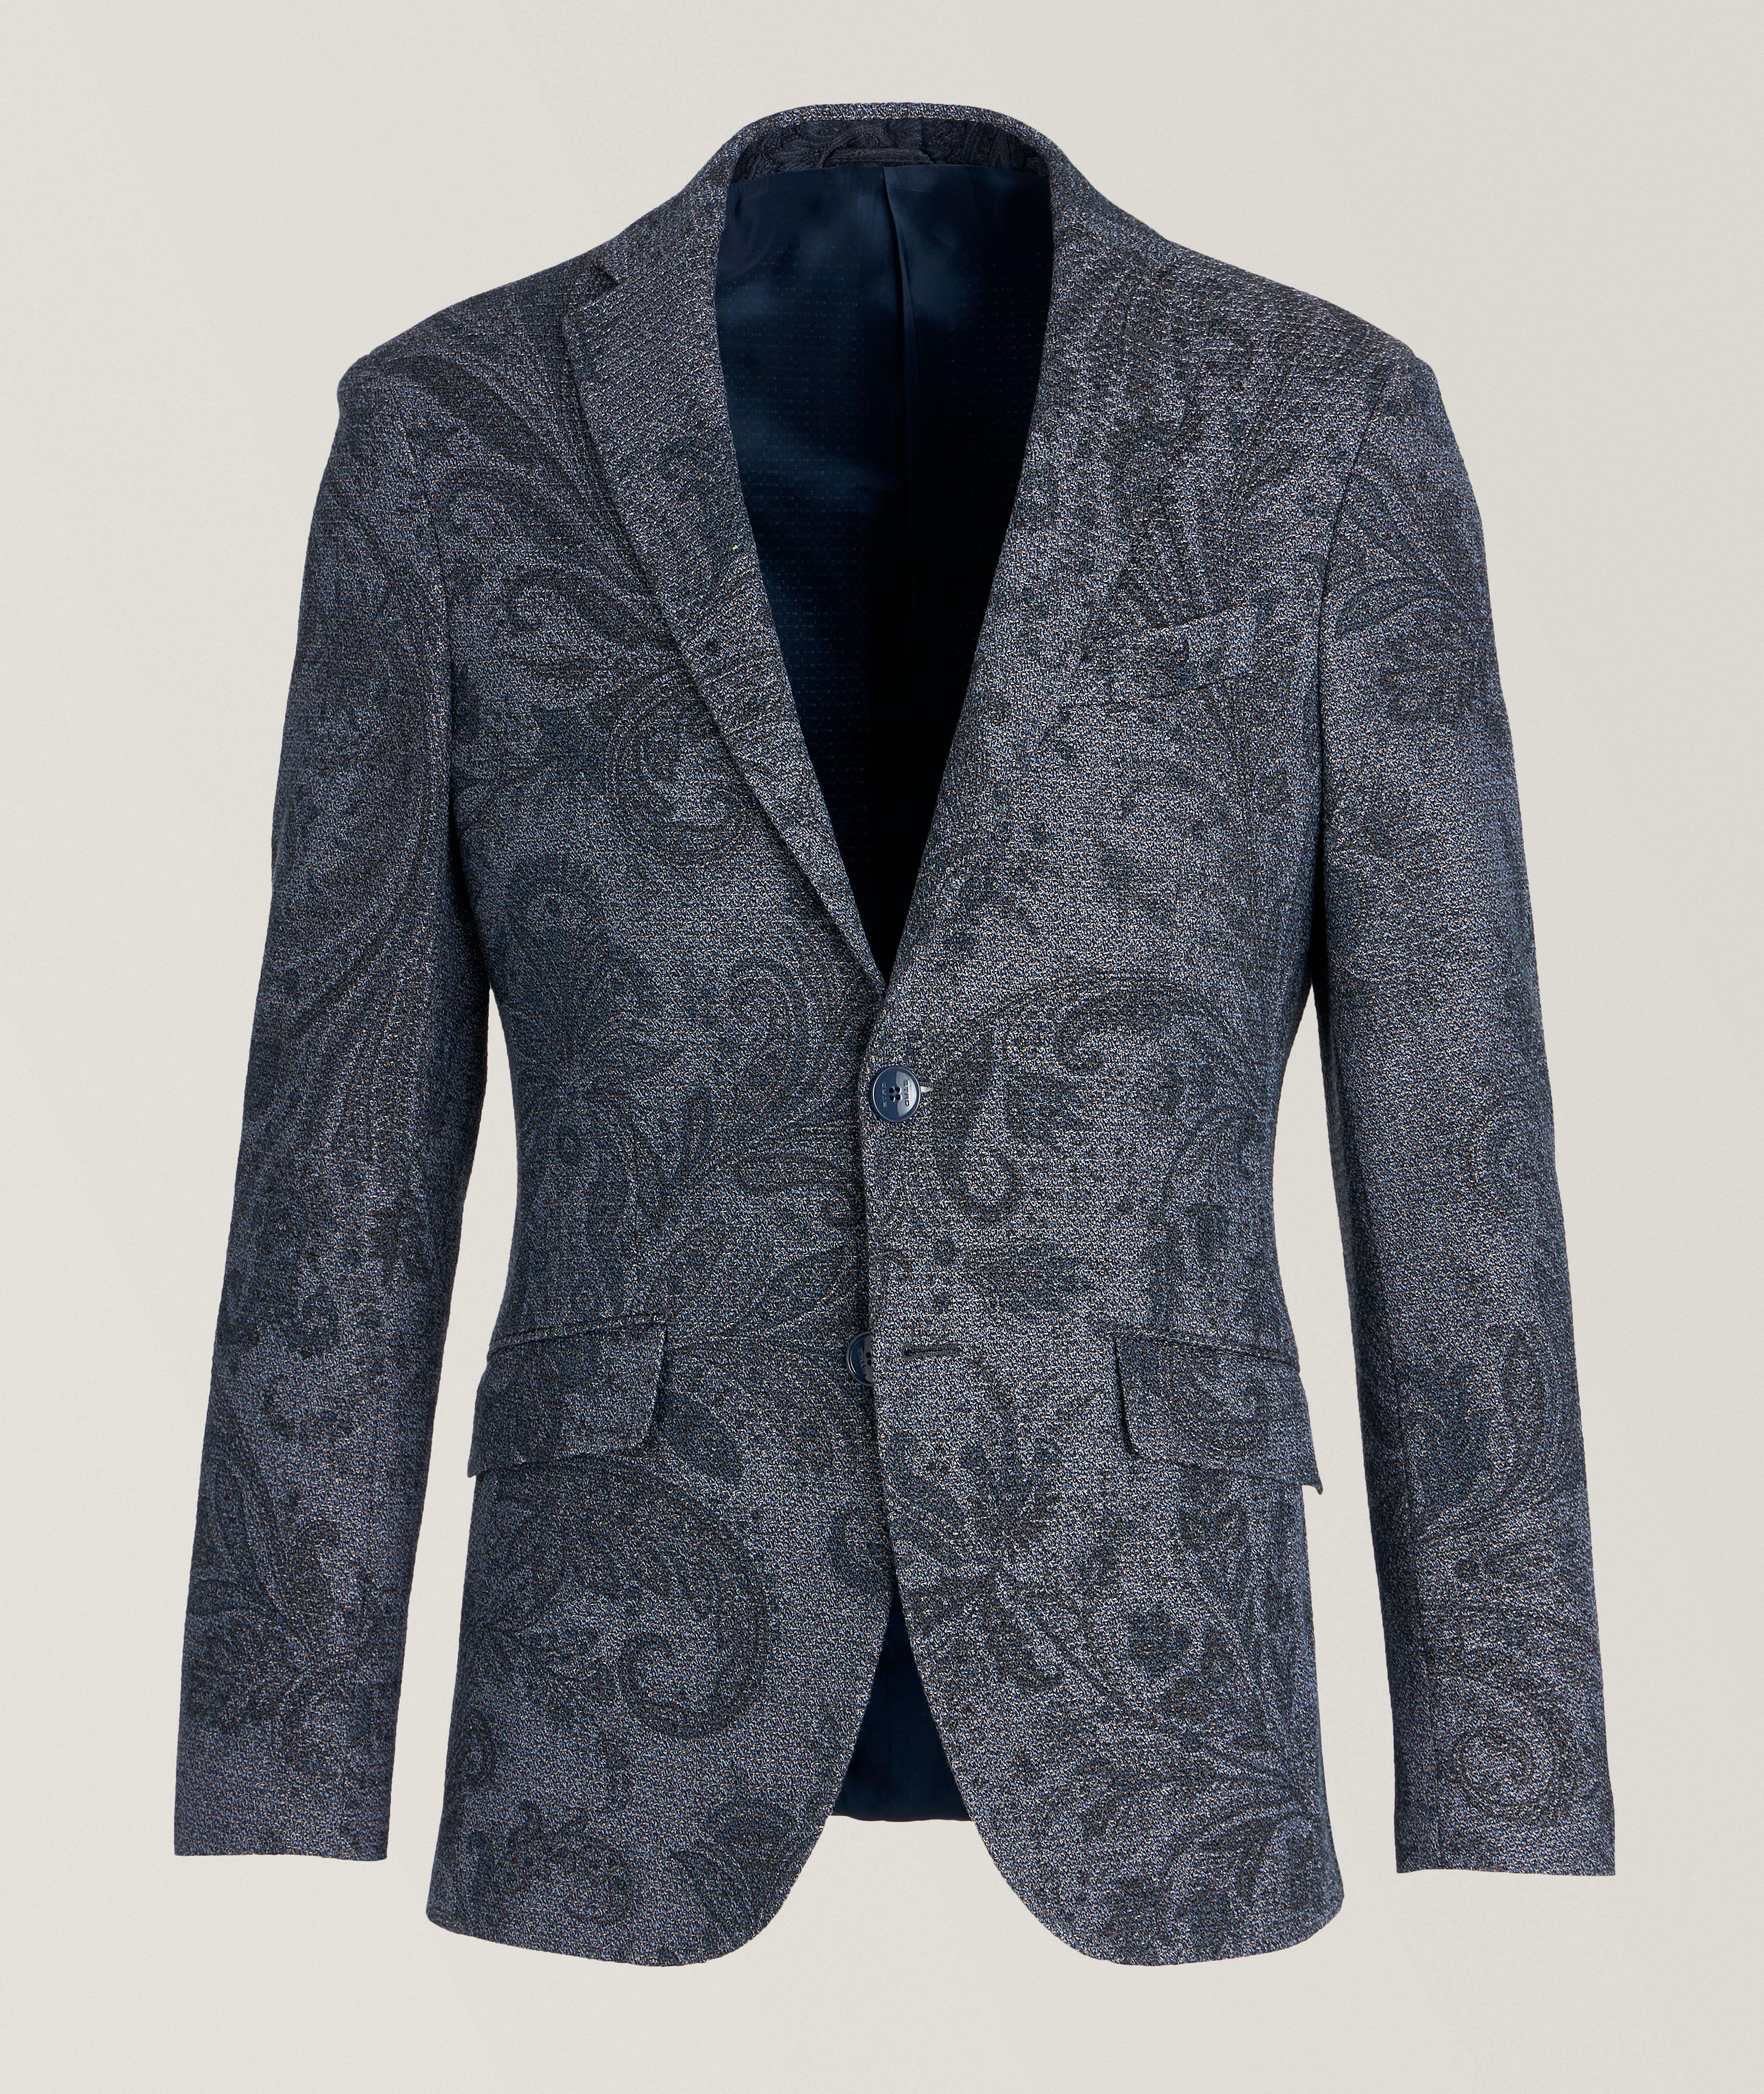 Tonal Textured Paisley Sport Jacket